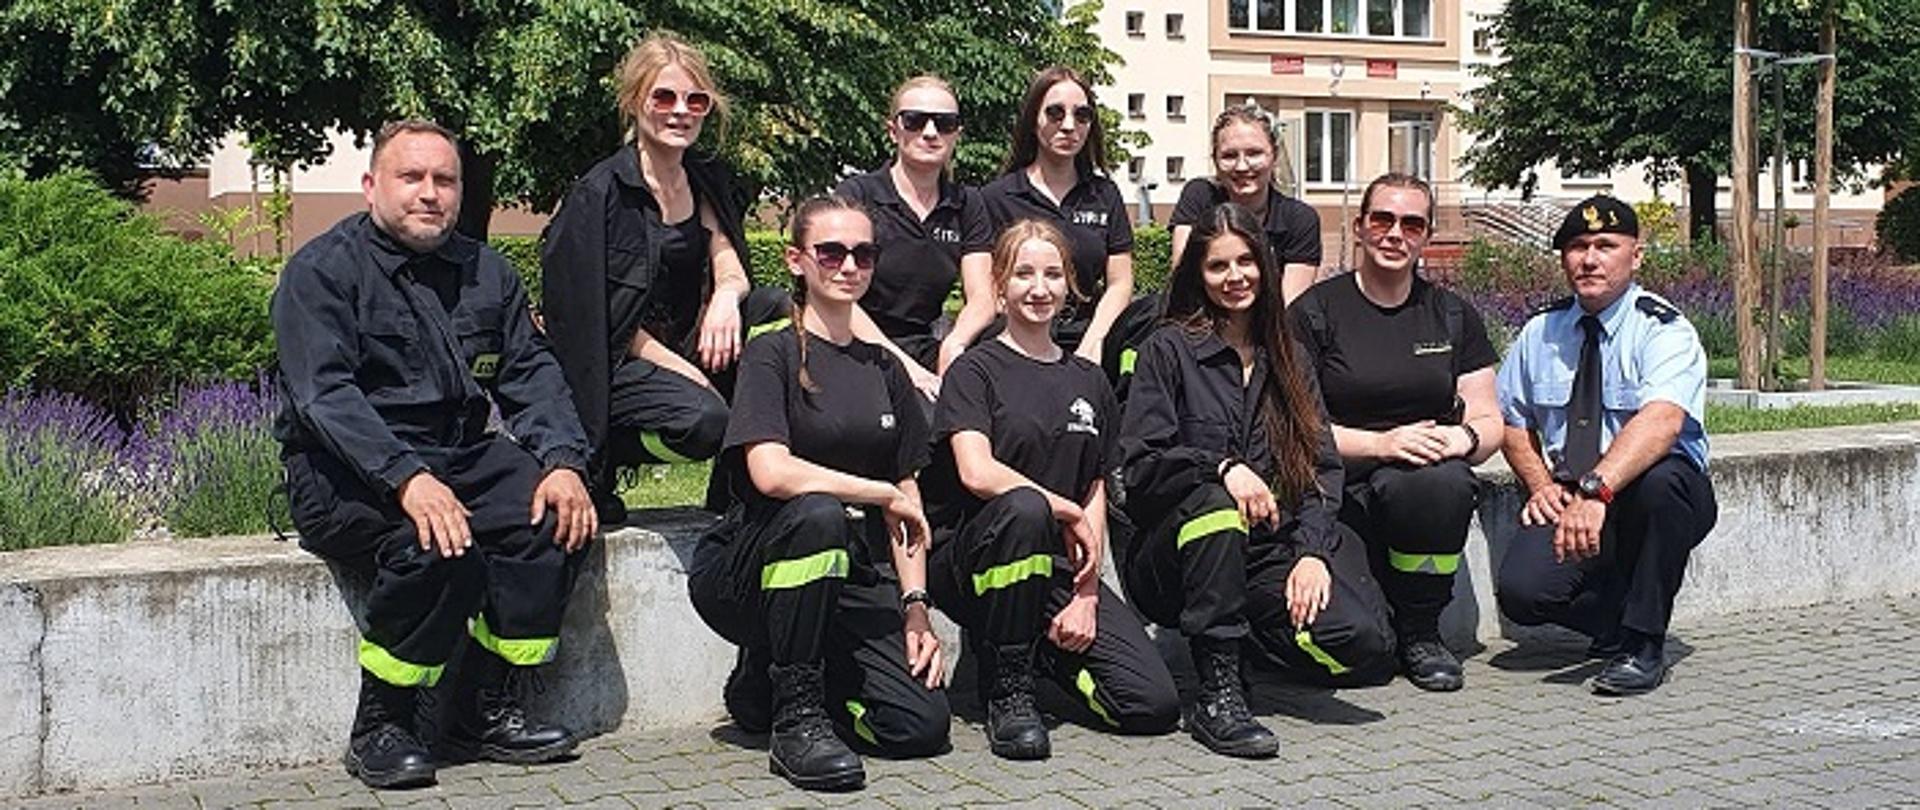 Zwycięska drużyna kobieca OSP Suraż razem z opiekunem z ramienia Komendy Miejskiej PSP w Białymstoku – mł. kpt. Arturem Grzybowskim